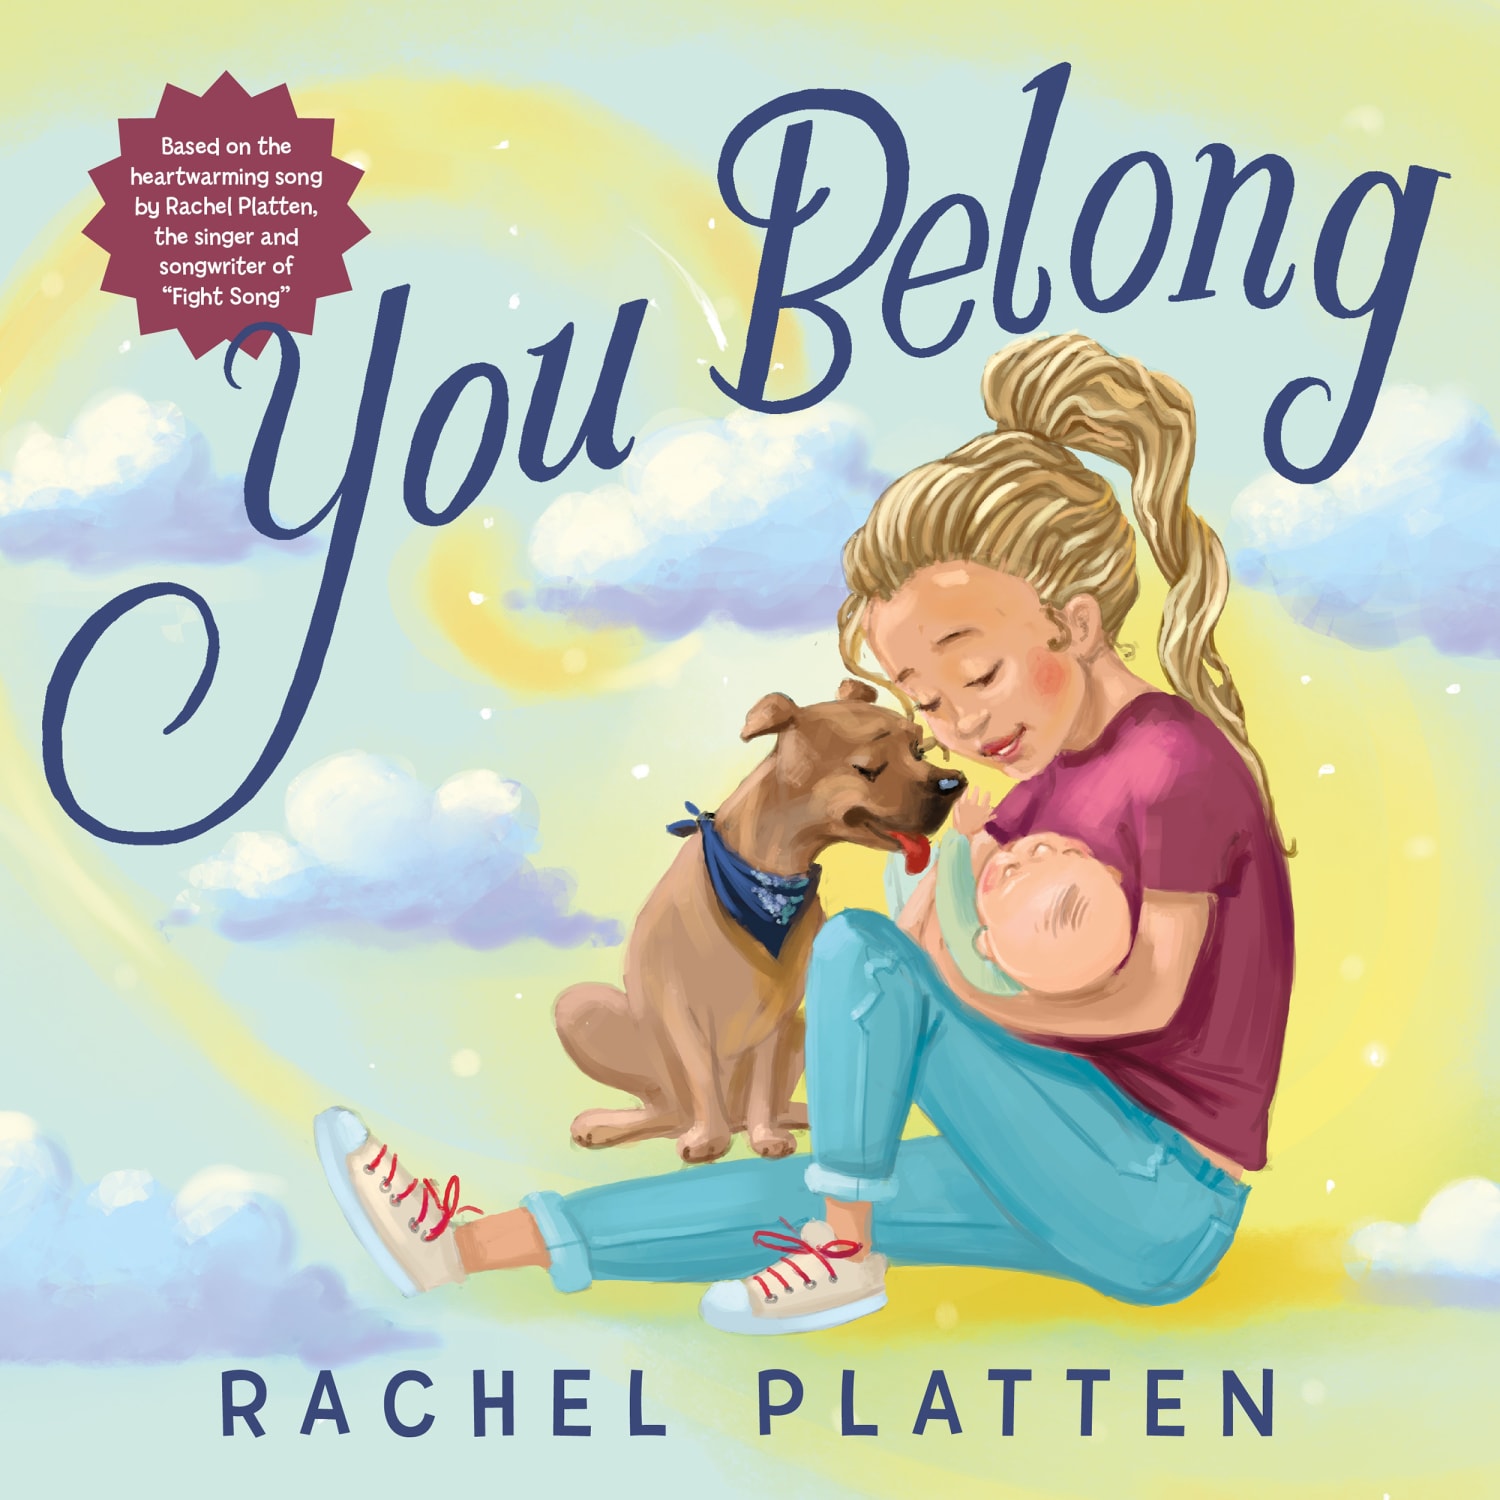 Rachel Platten turns song 'You Belong' into children's book